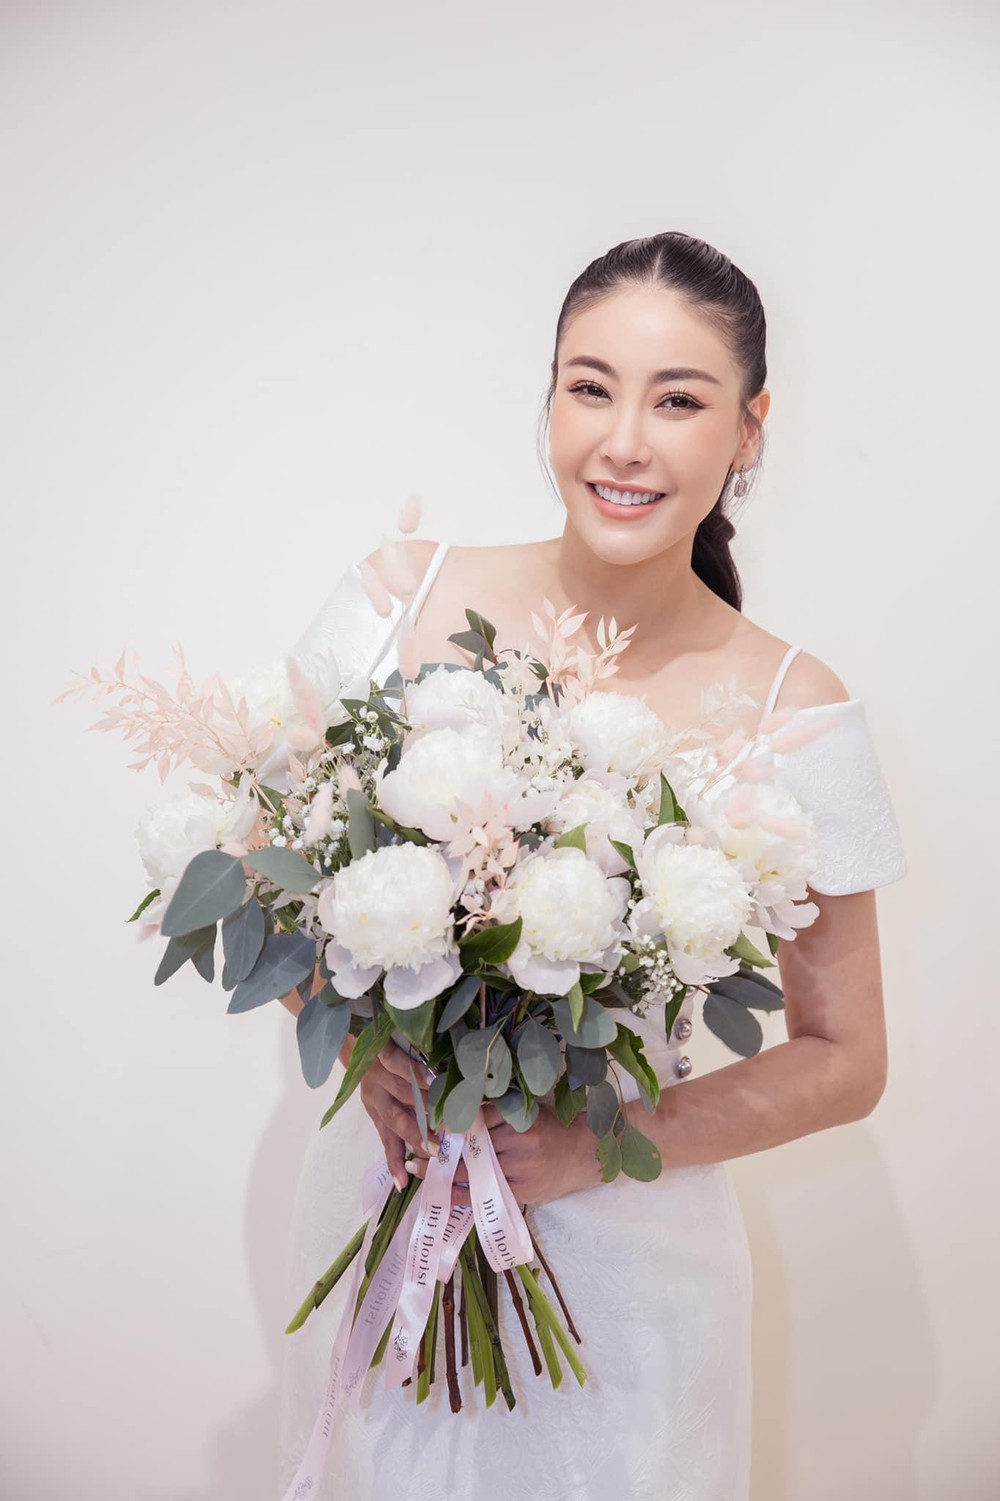 Hoa hậu Hà Kiều Anh ở tuổi 45: Từ nhan sắc đến vóc dáng đỉnh cao khiến đàn em ngưỡng mộ - Ảnh 1.